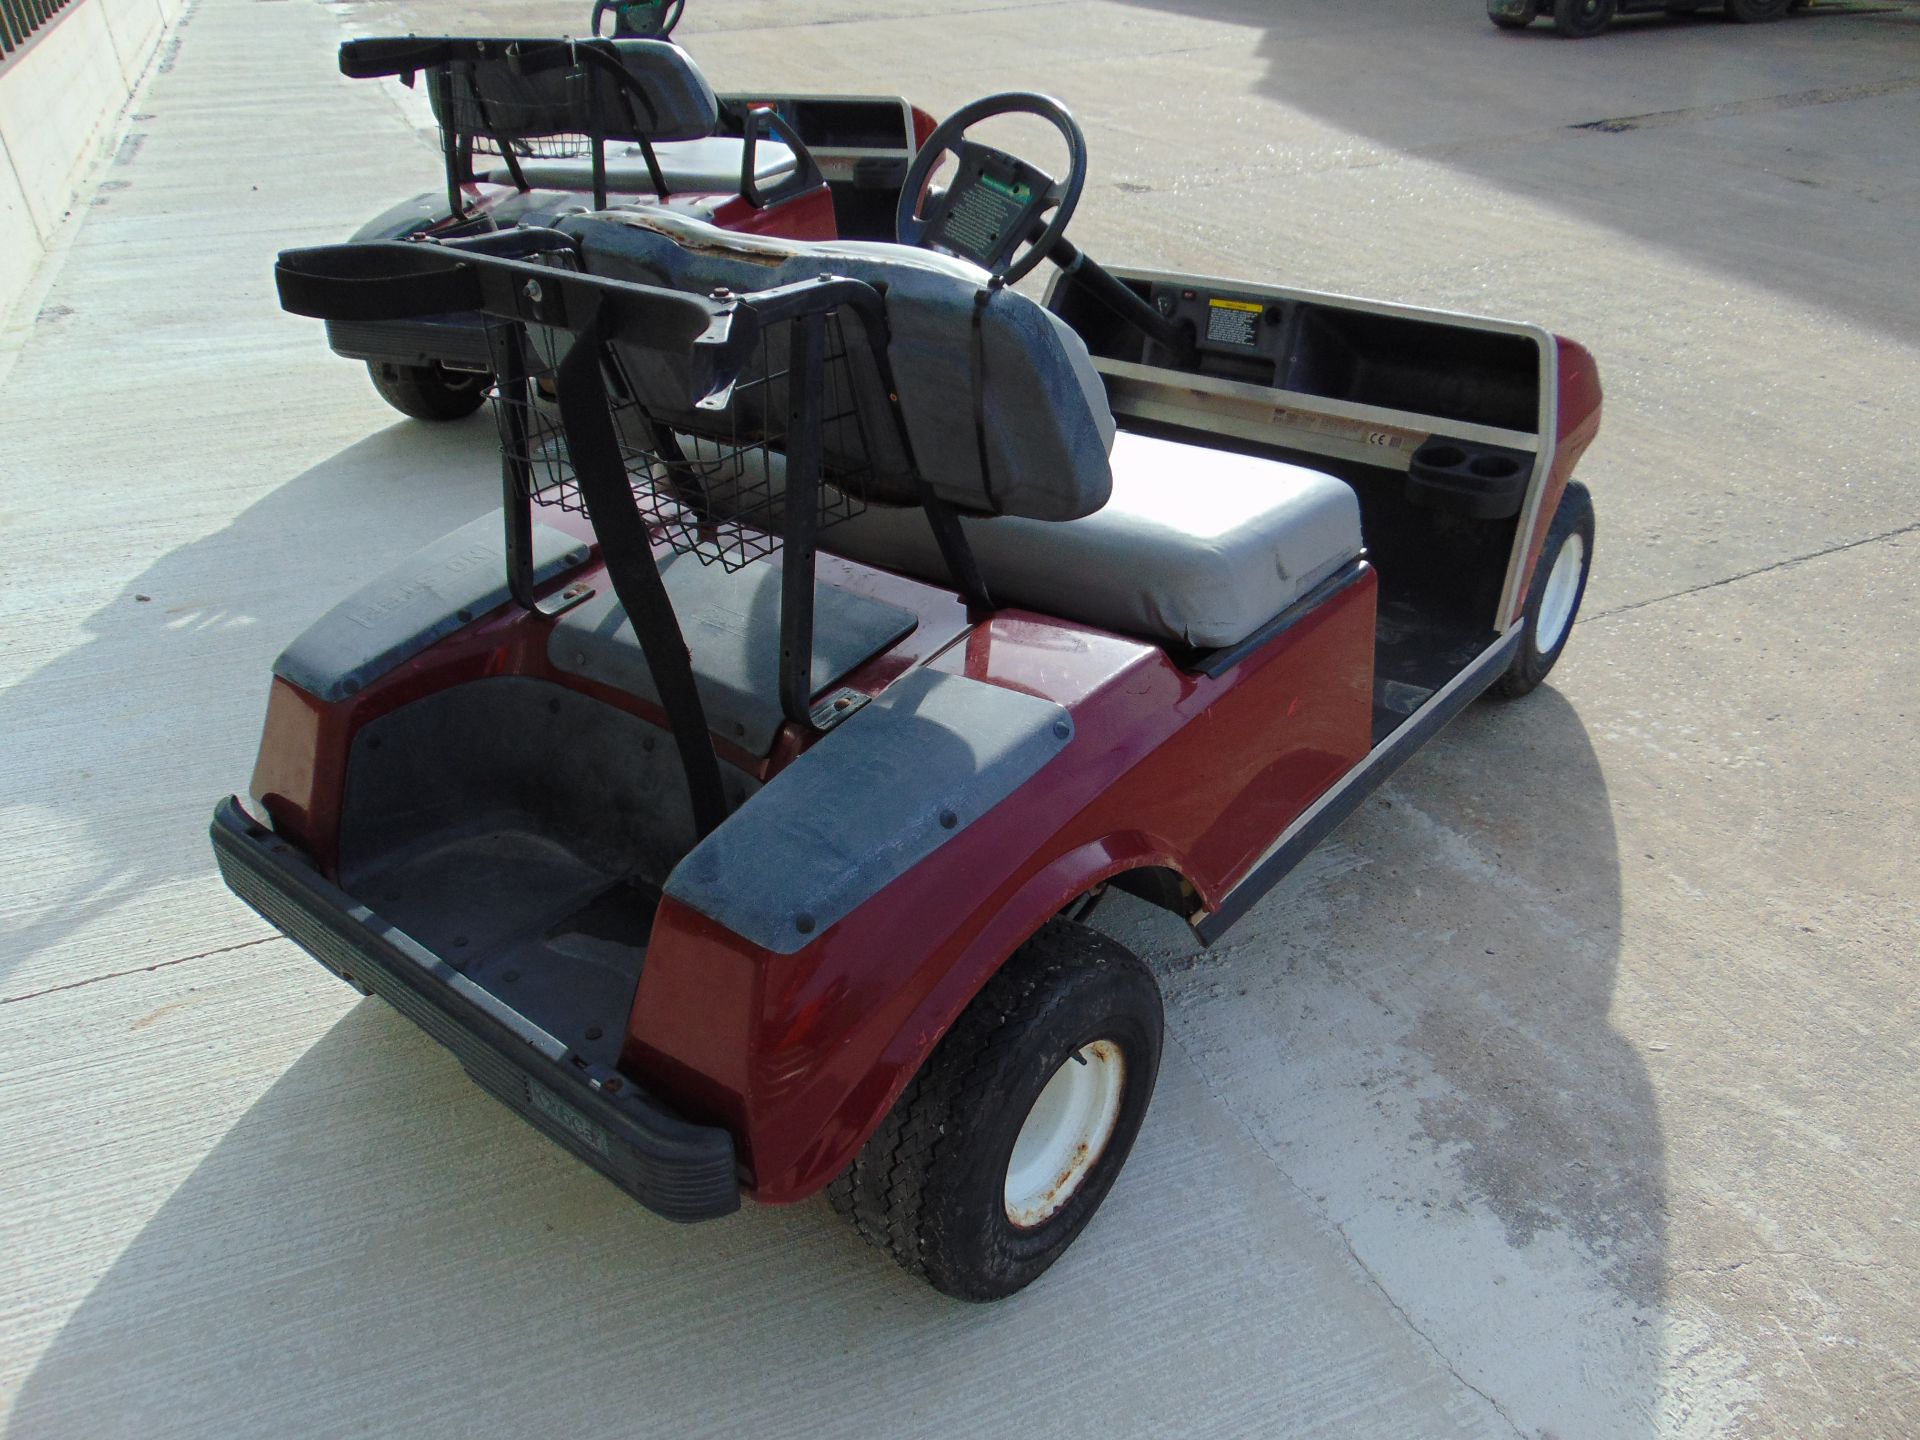 Club Car Golf Cart - Petrol Engine. - Image 3 of 16